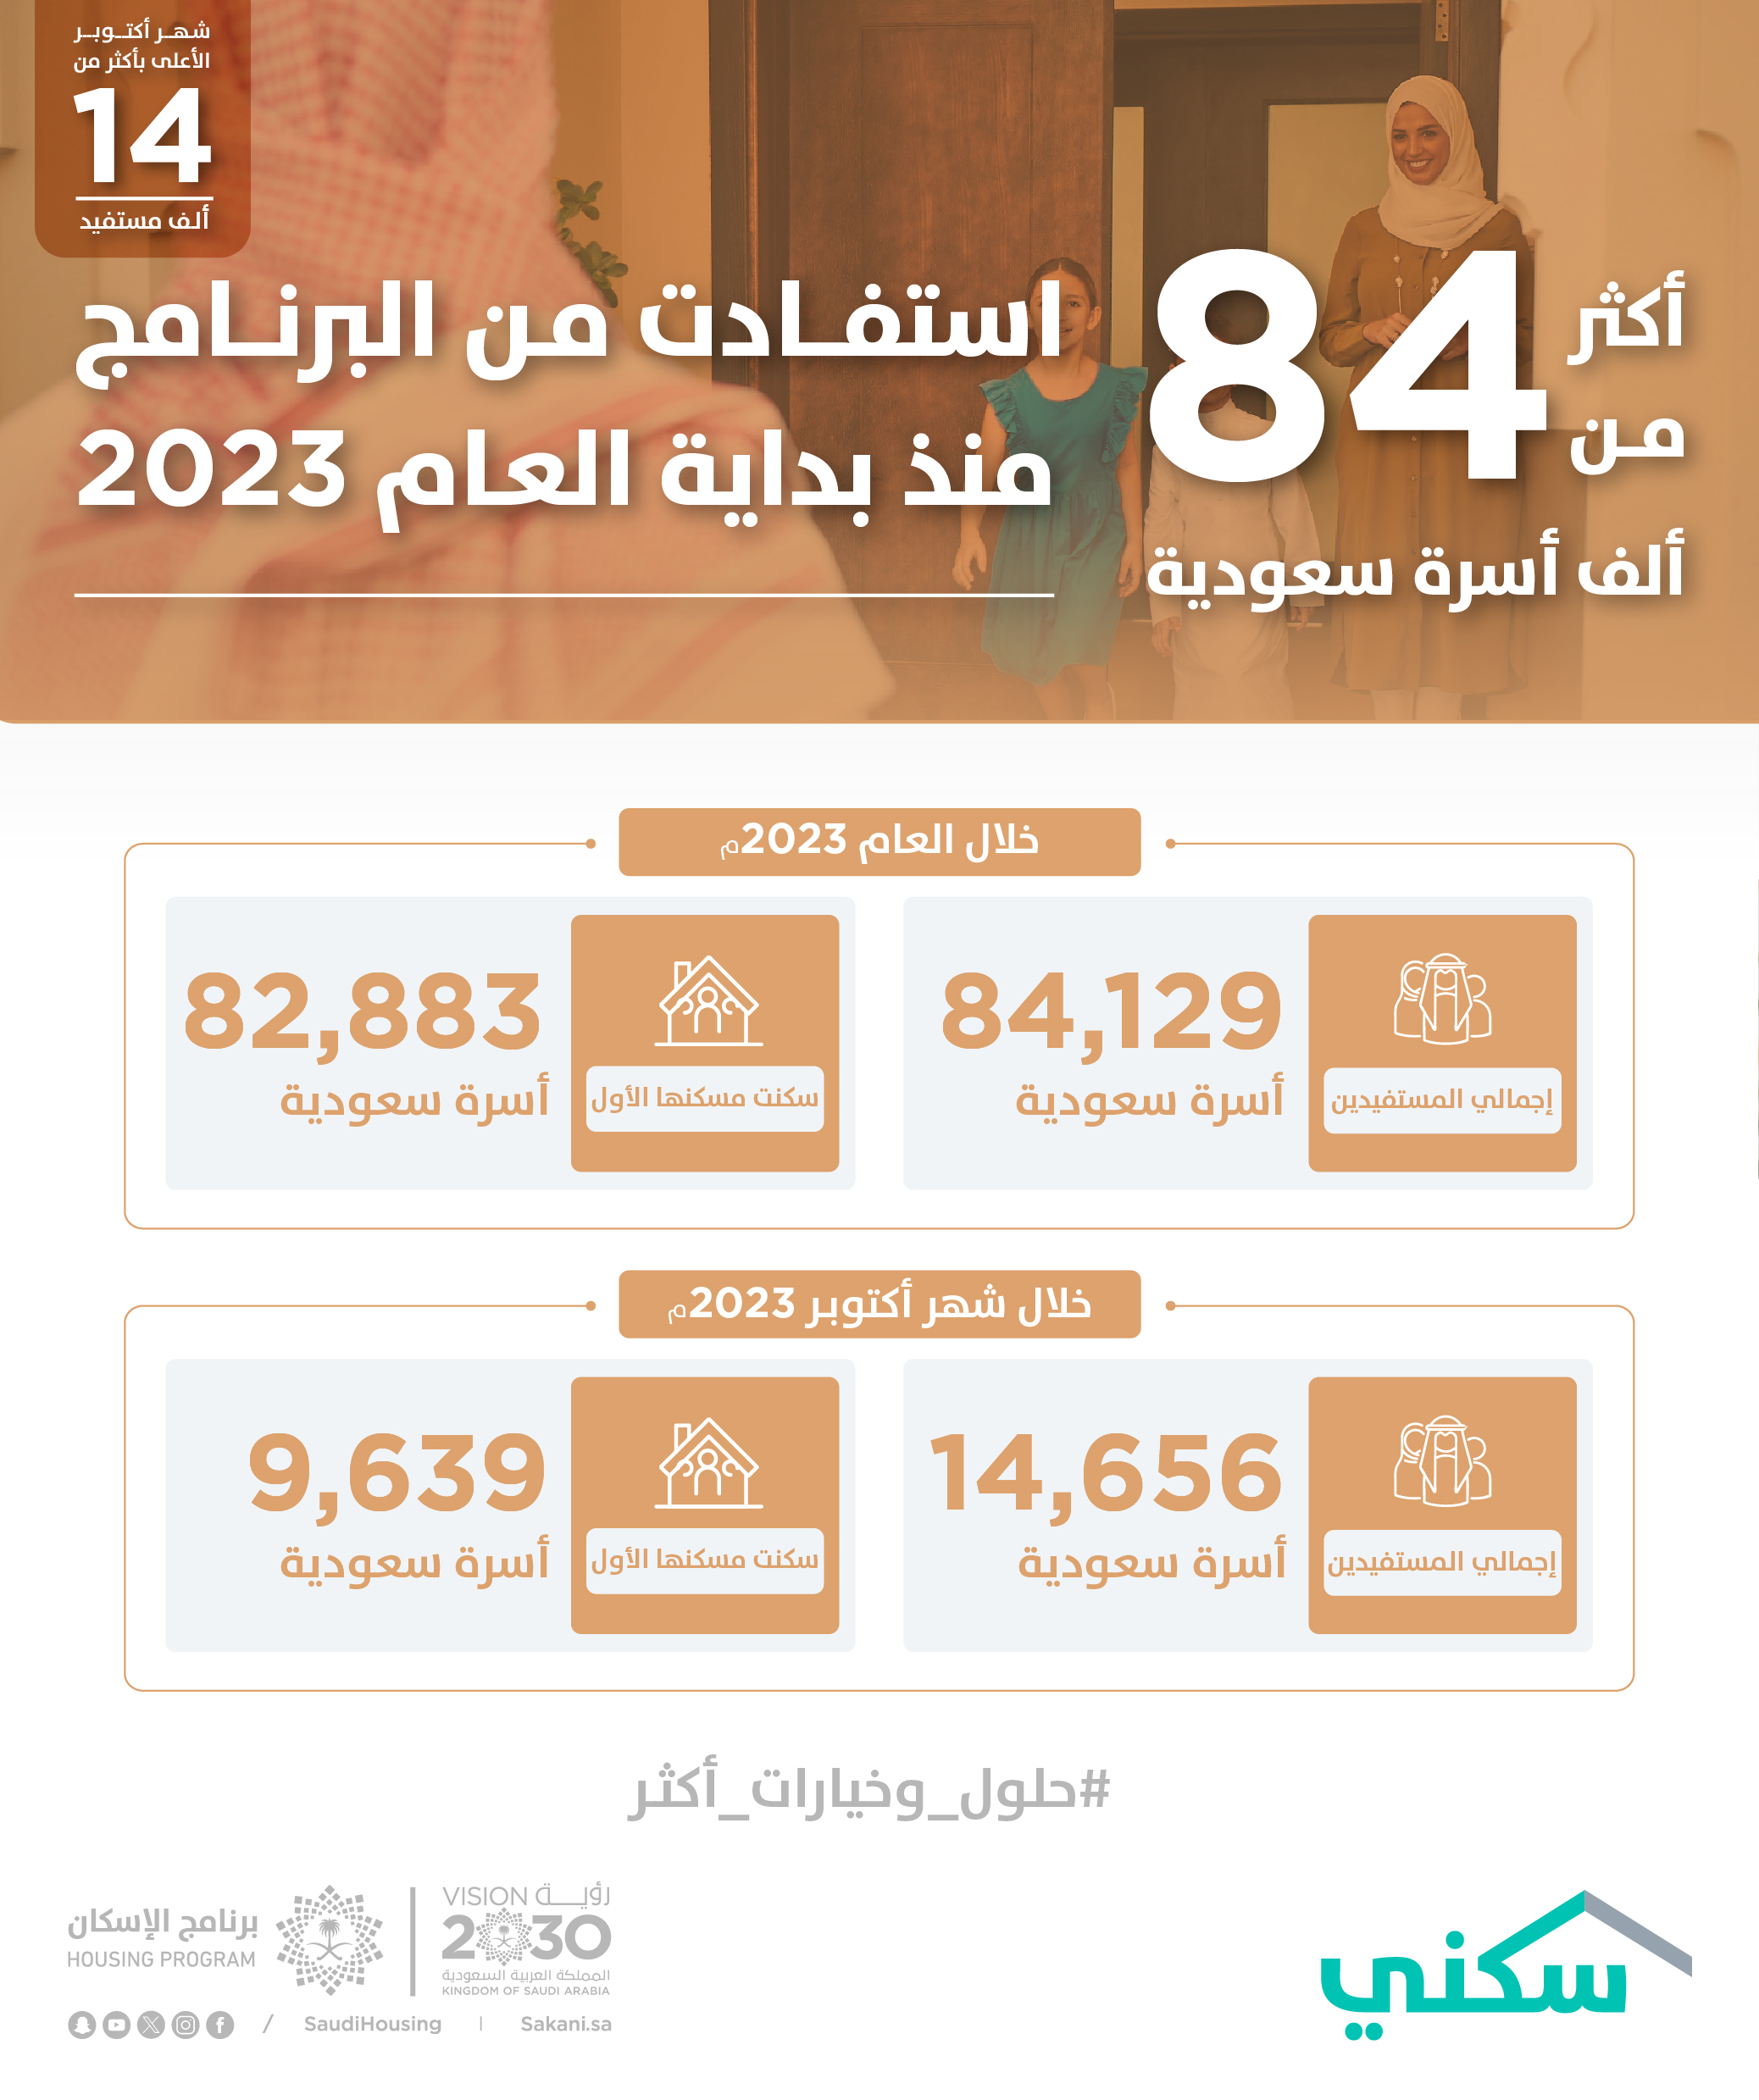 "سكني": 84 ألف أسرة سعودية استفادت من البرنامج منذ بداية العام.. وأكتوبر الأعلى بأكثر من 14 ألف مستفيد